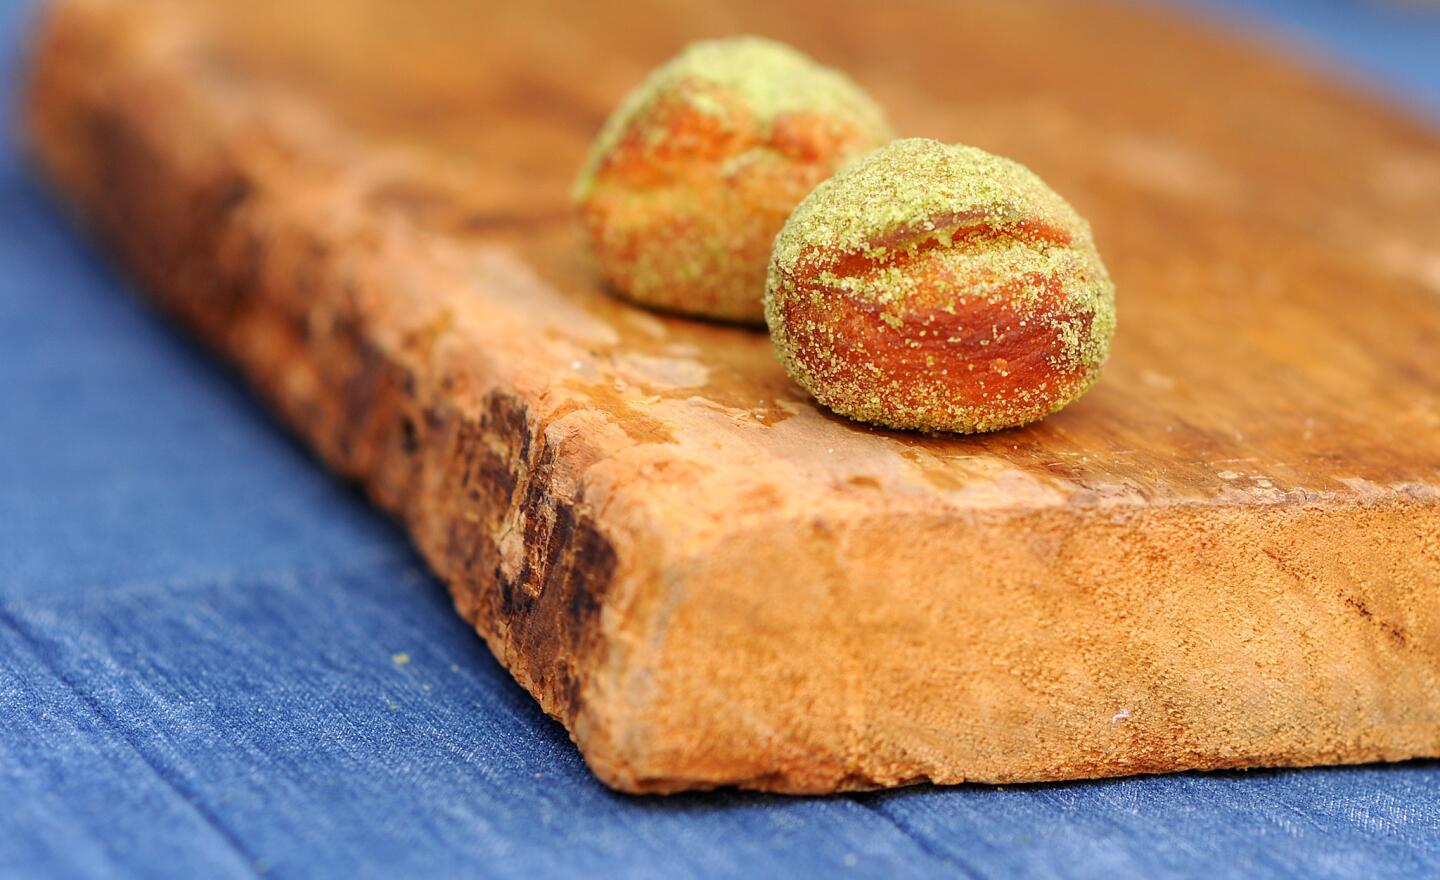 The matcha donut by Hinoki & The Bird